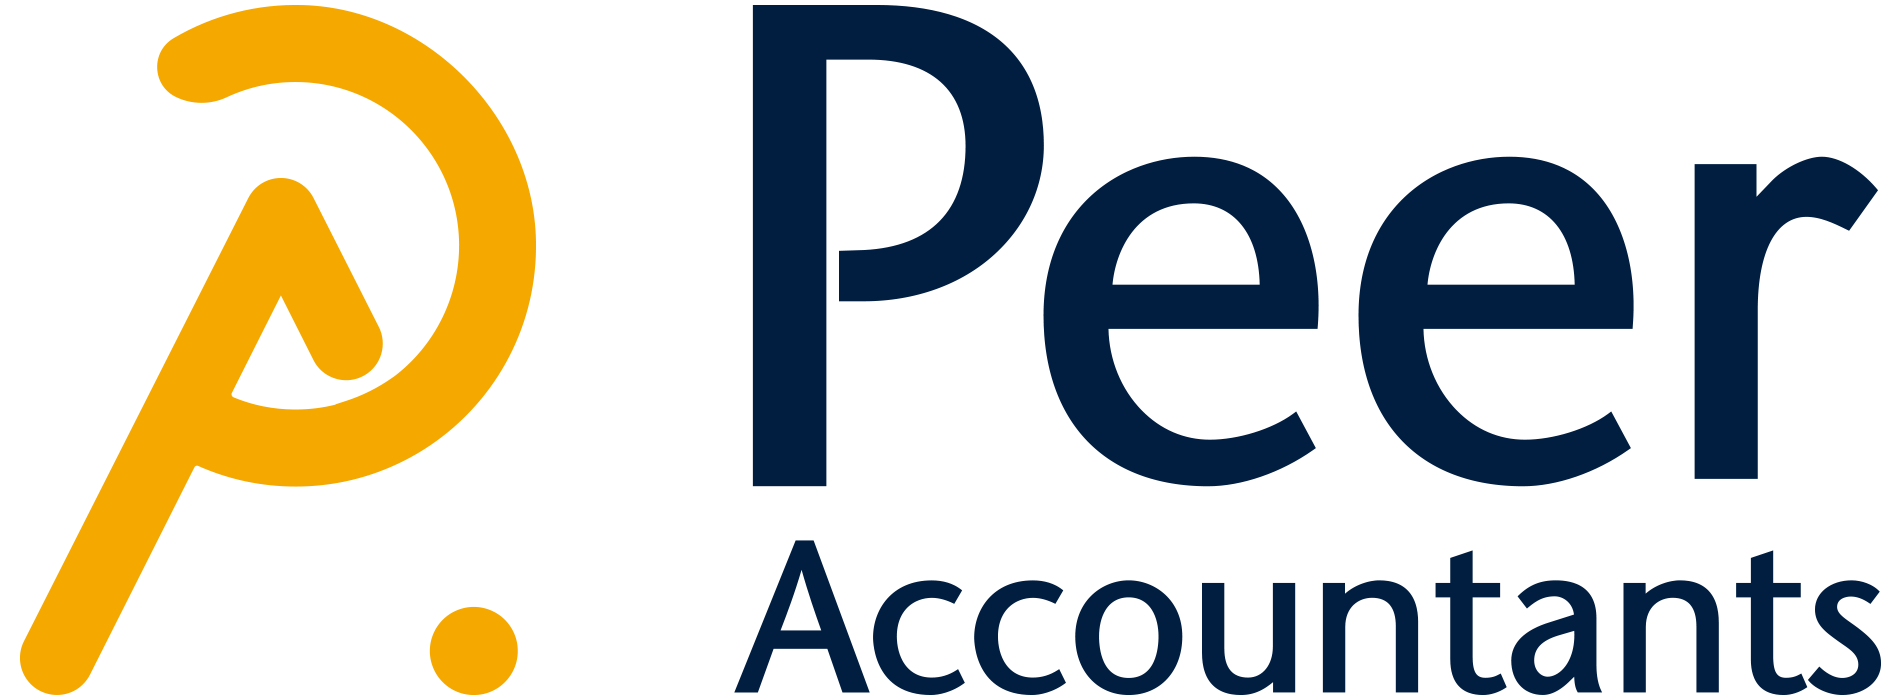 Peer Accountants